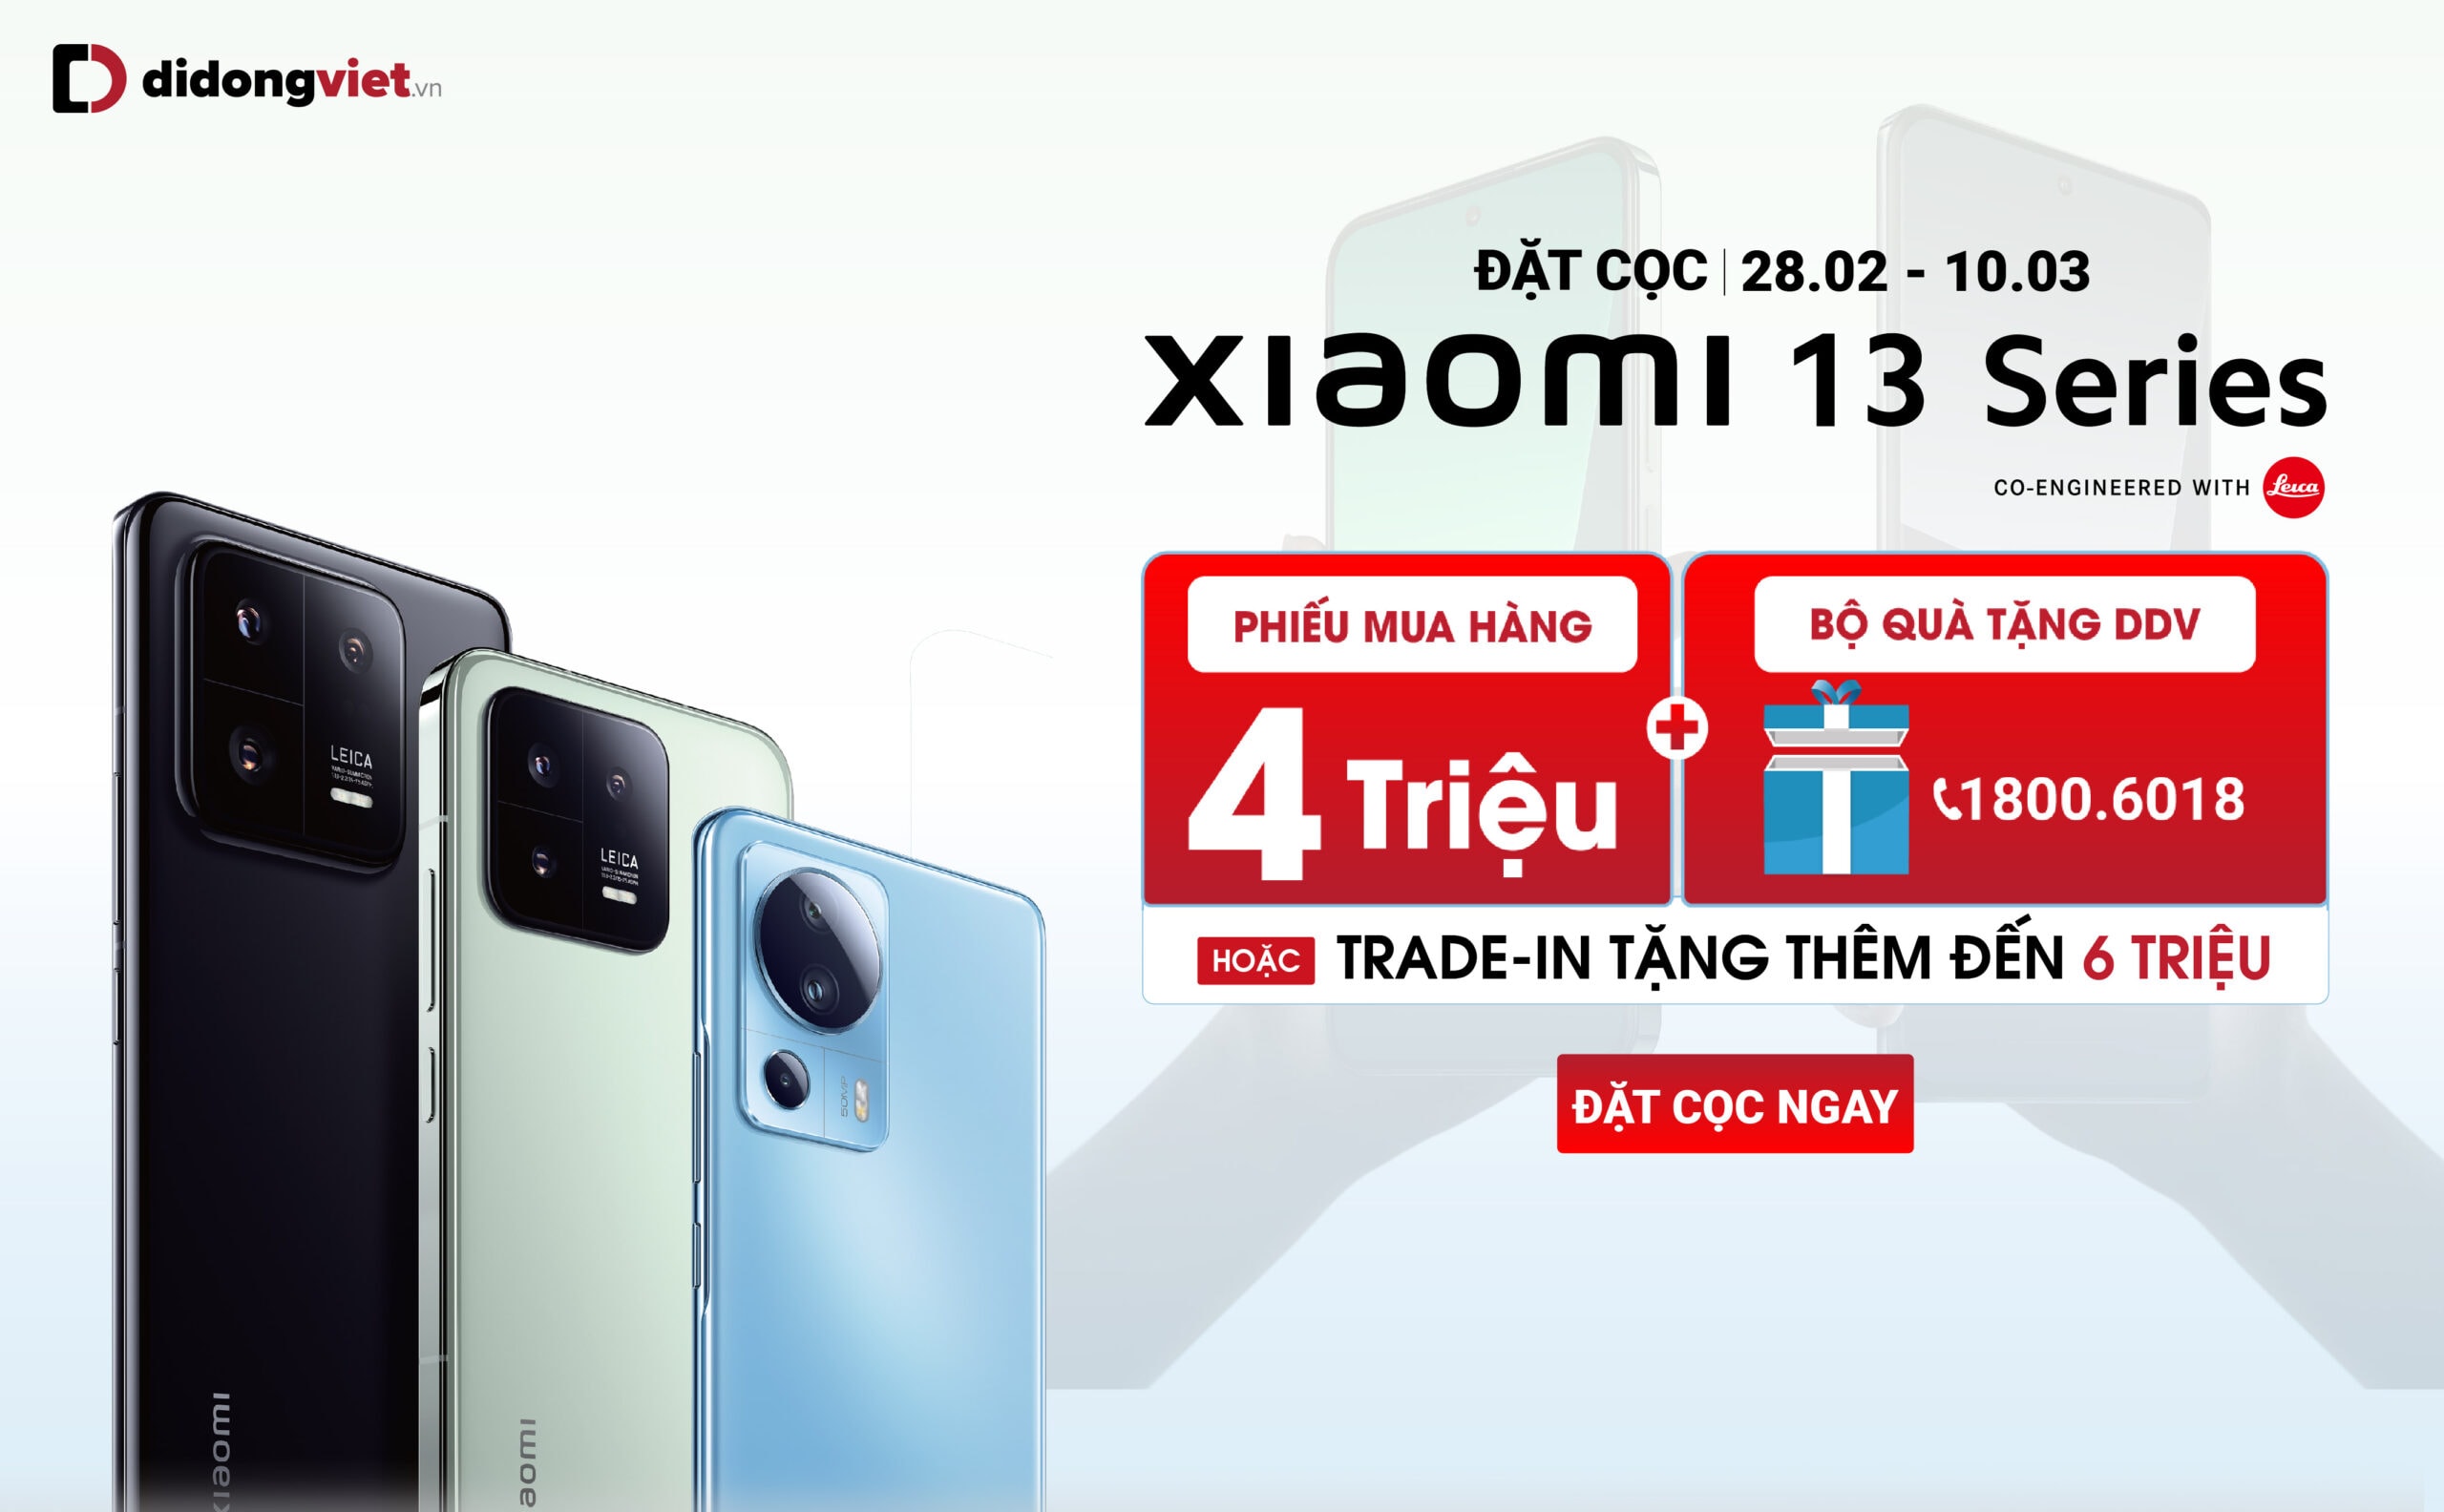 Di Động Việt nhận đặt trước Xiaomi 13 series từ 11.49 triệu đồng, kèm ưu đãi lên đến 6 triệu đồng